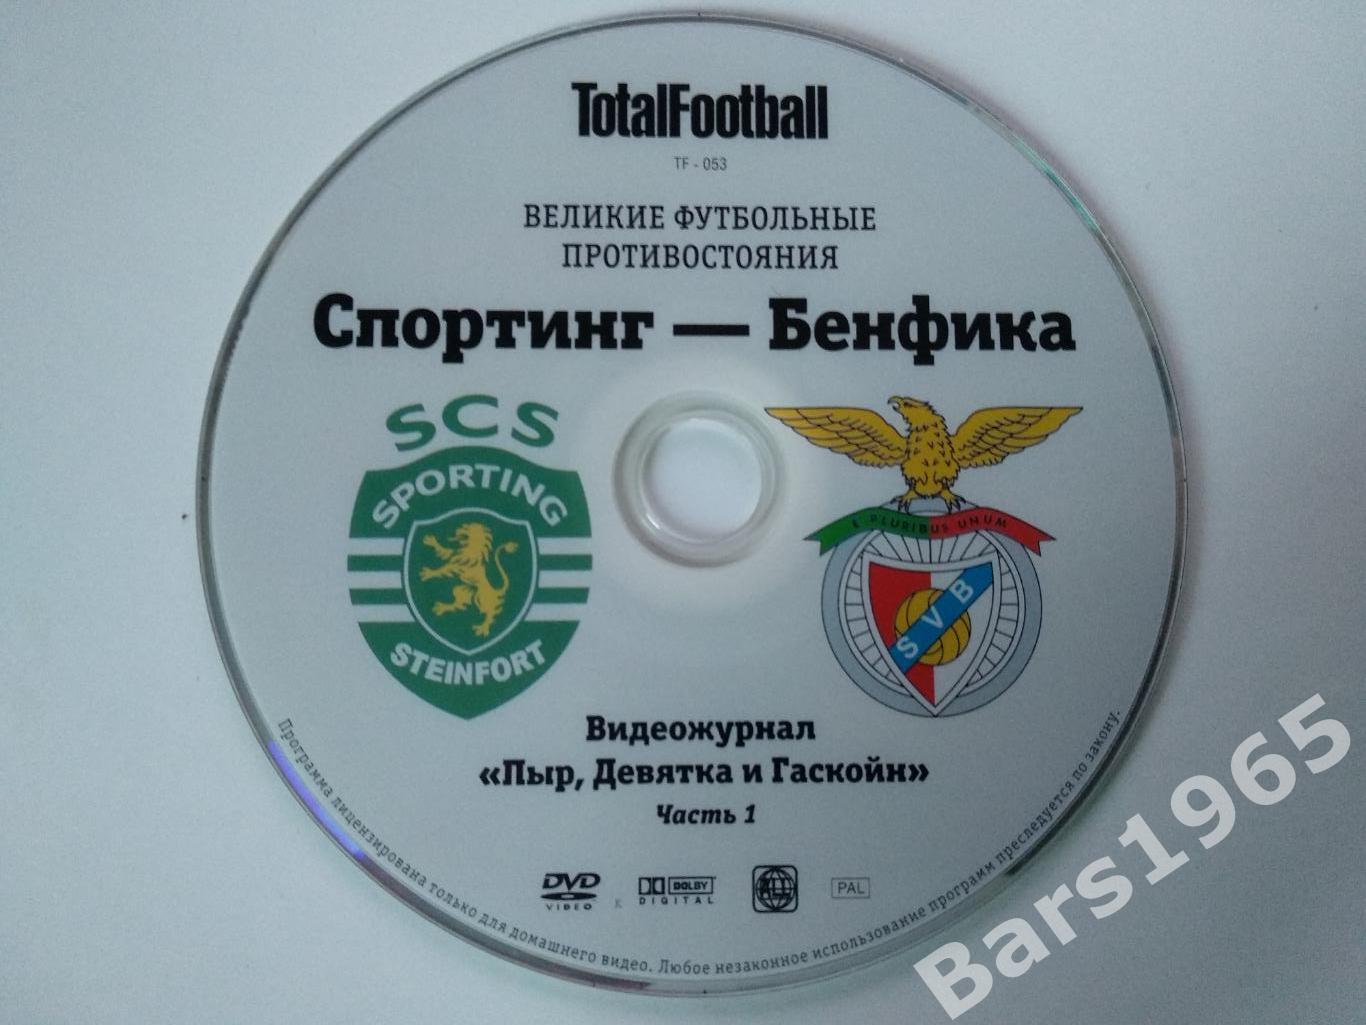 Великие футбольные противостояния Спортинг - Бенфика DVD